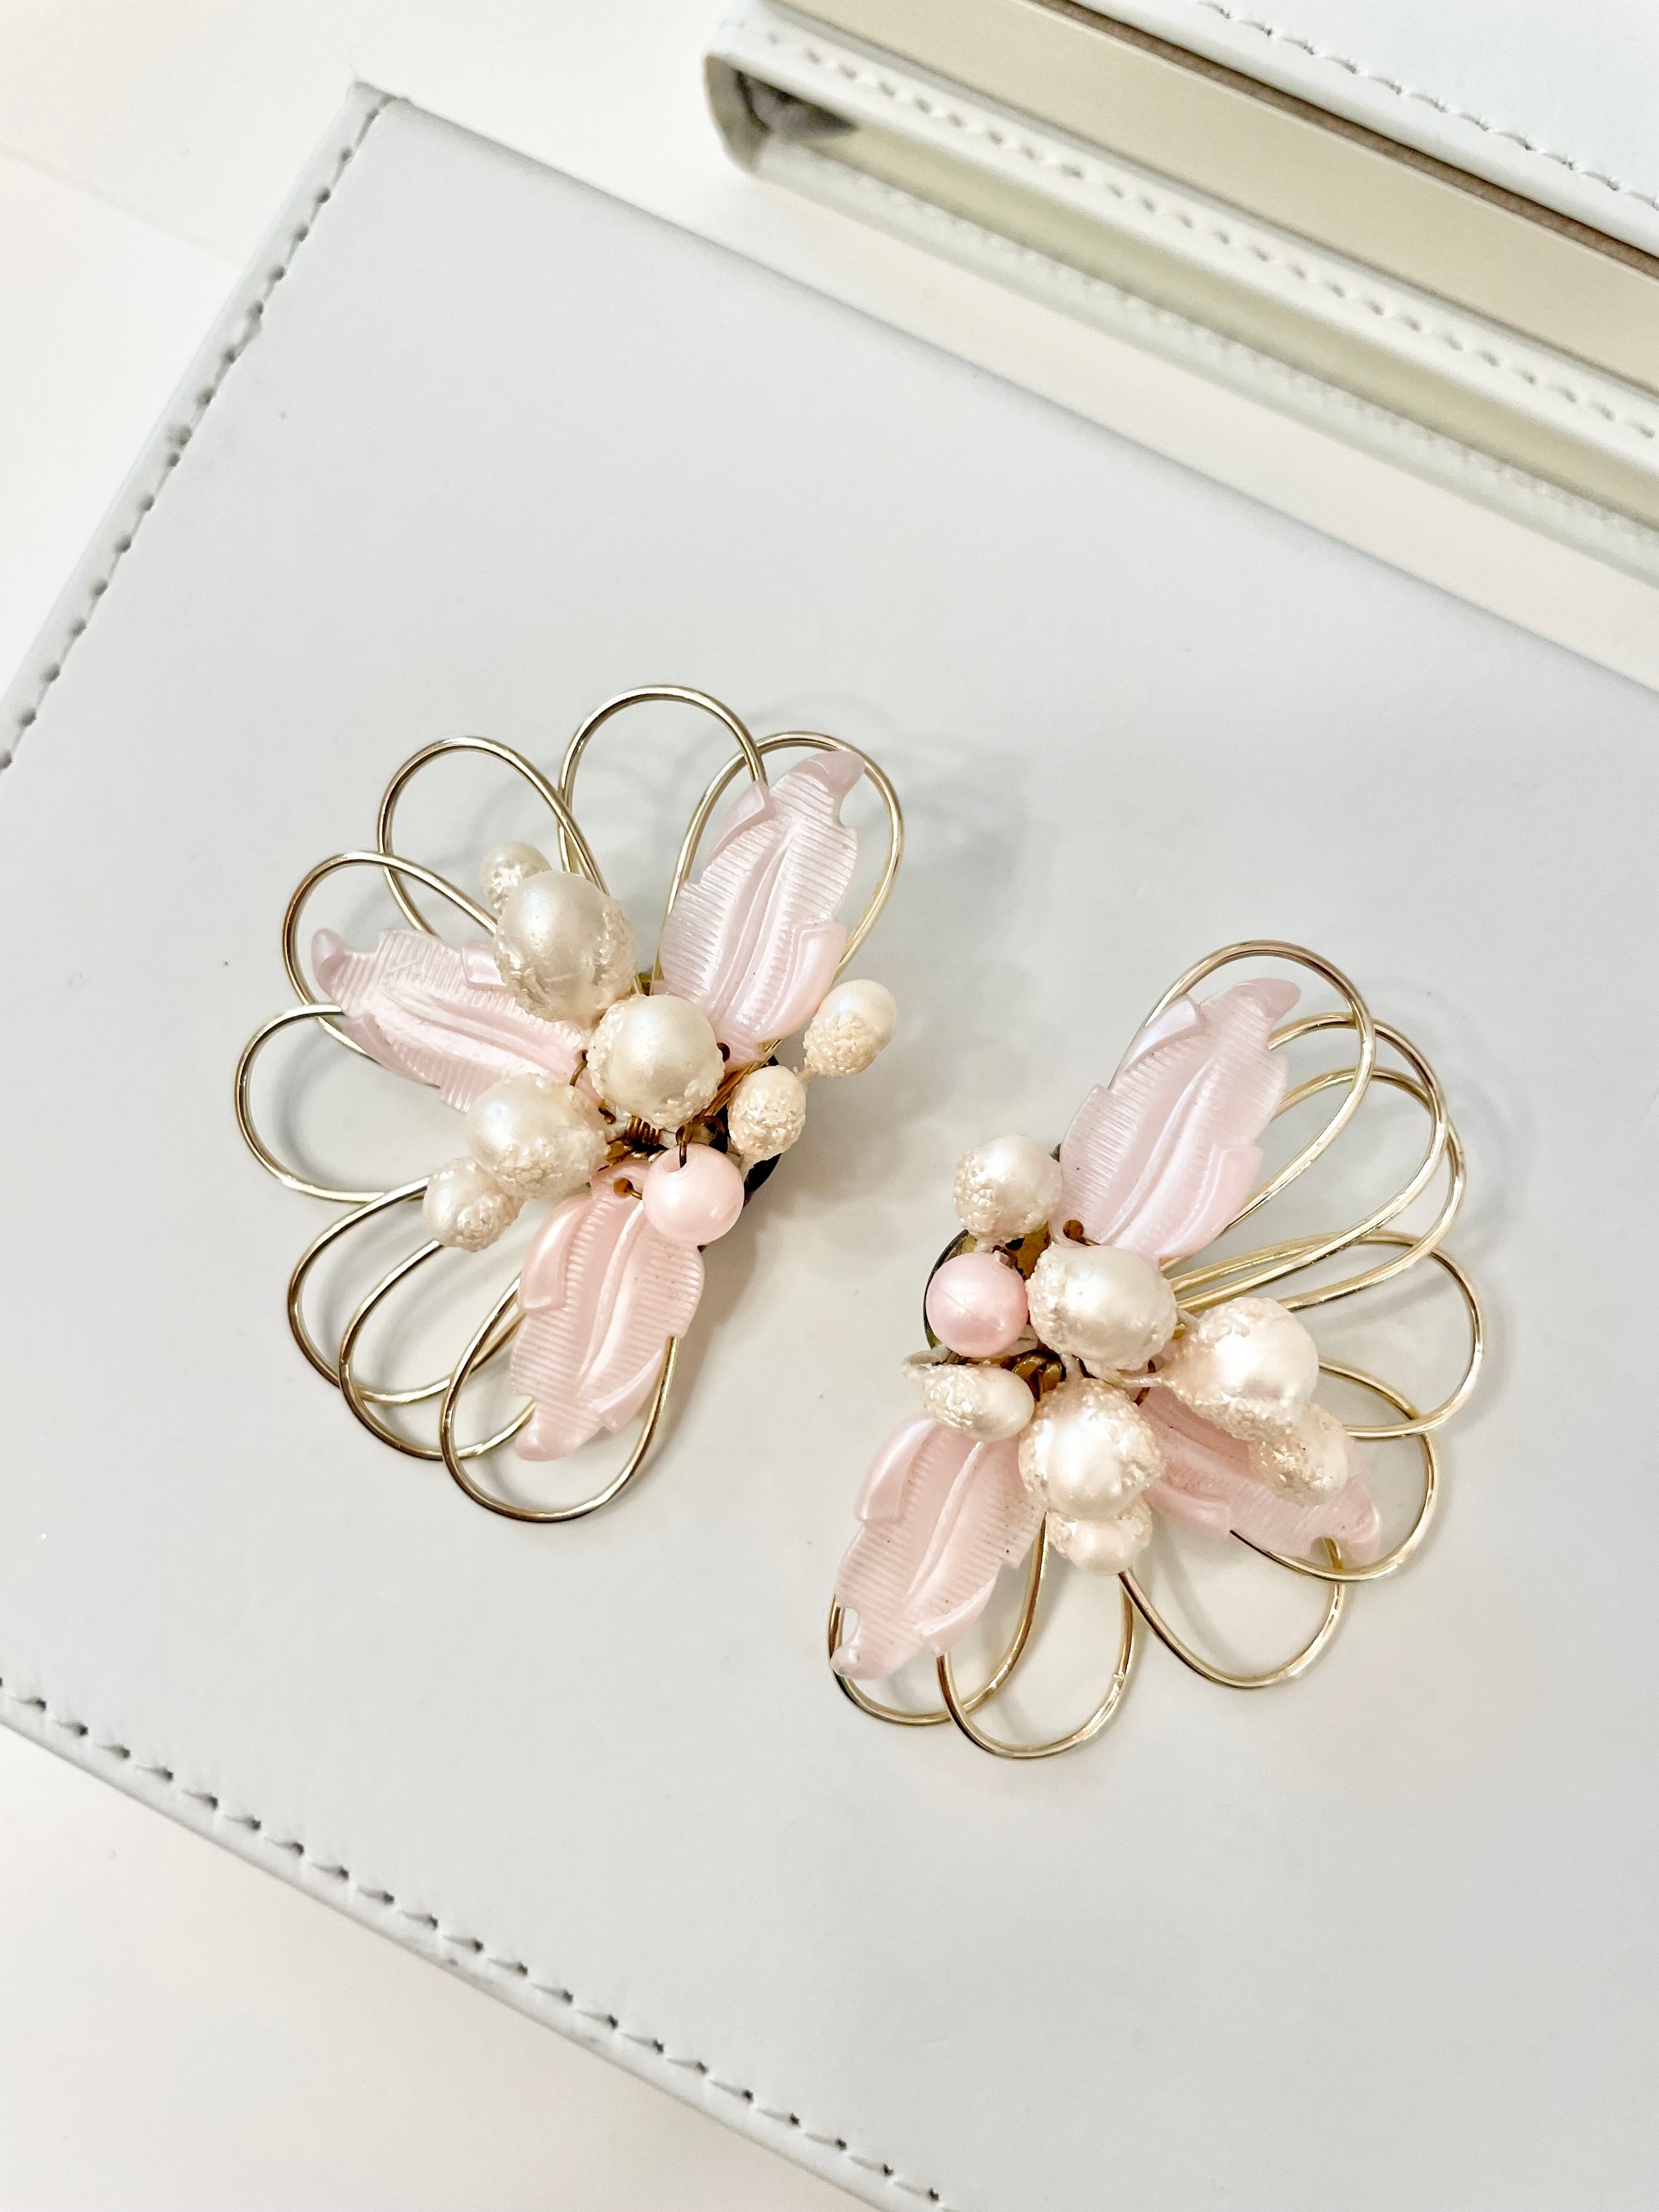 Vintage 1960's soft feminine fan style elegant earrings... so fabulous